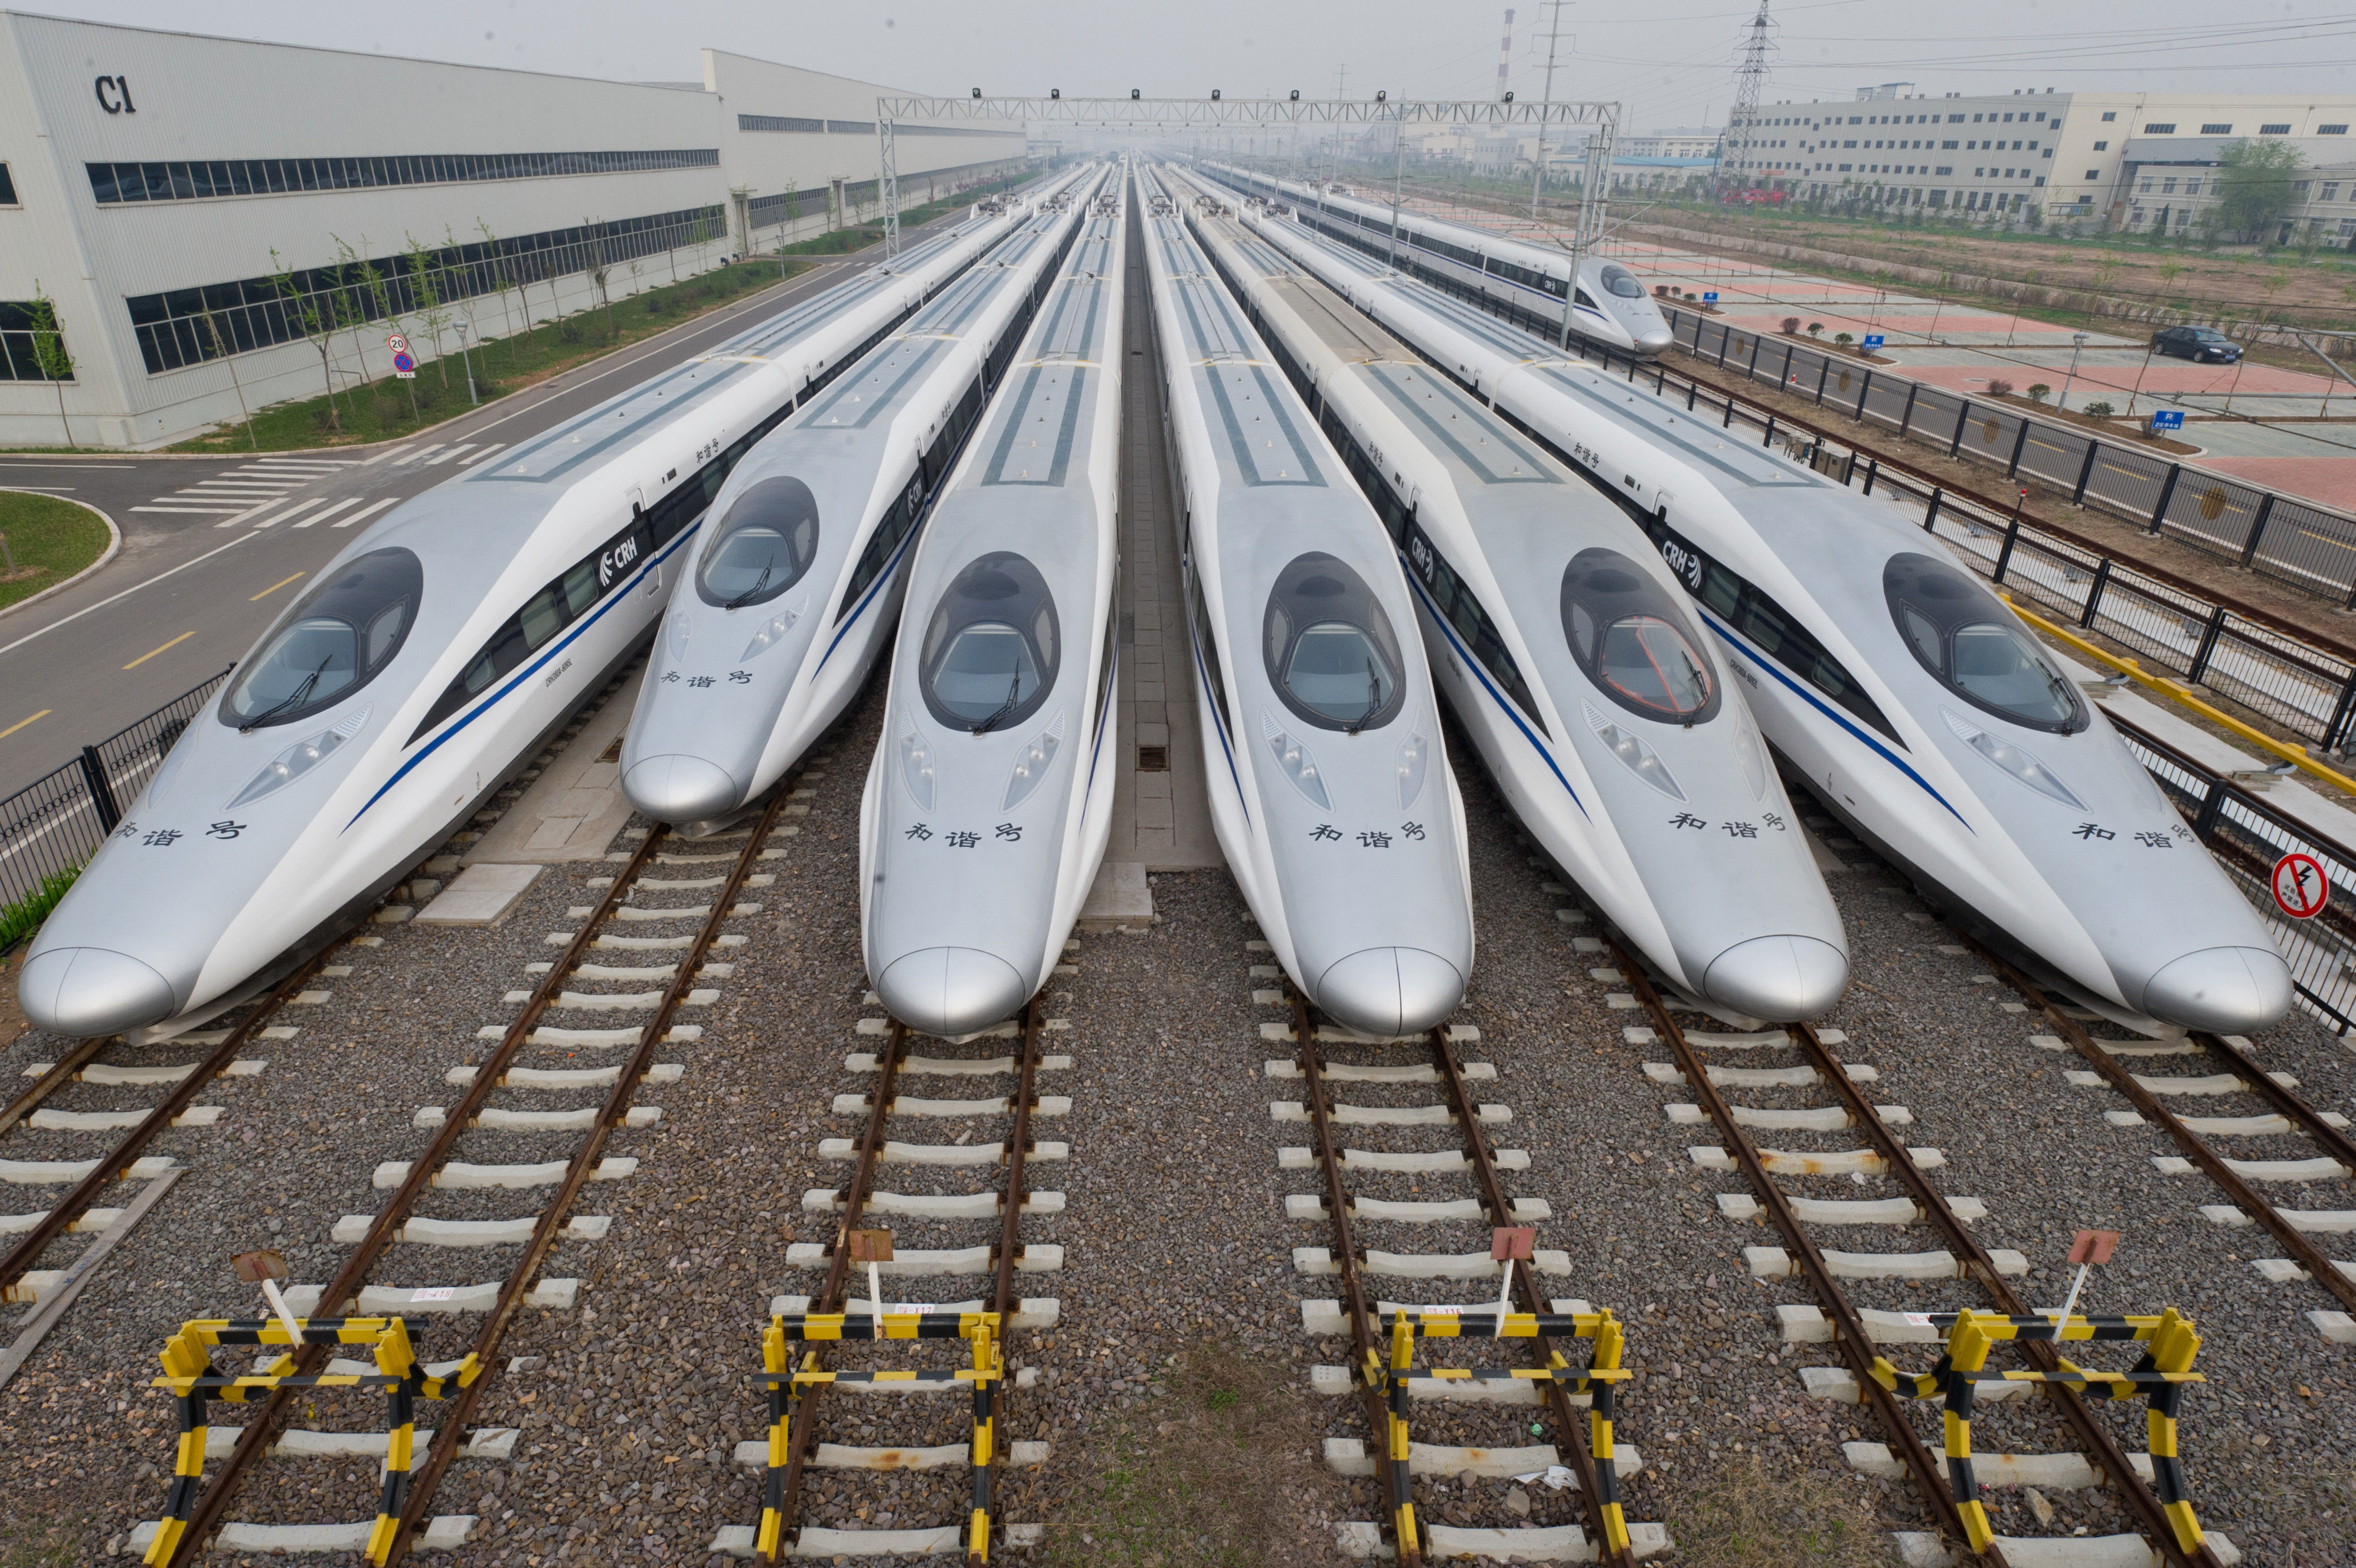 中国将建超级高铁,天津到北京只要3分钟,网友